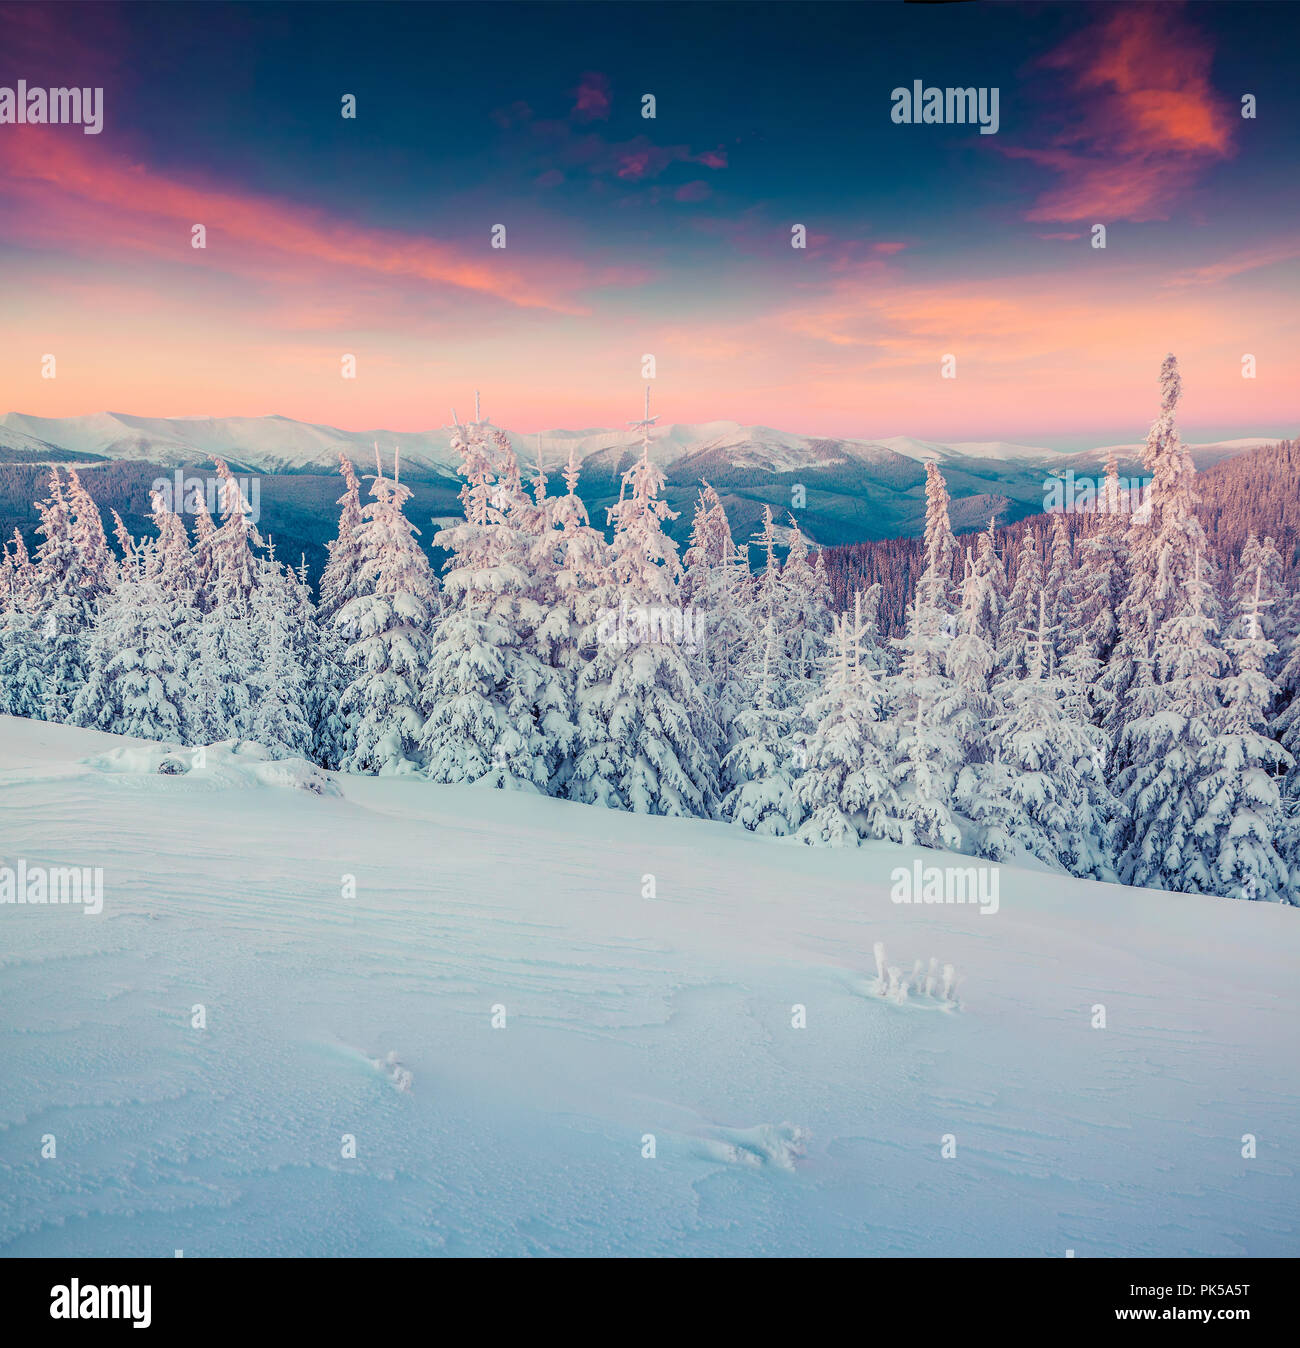 Bunte winter Sonnenaufgang in den Snowy Mountains. Instagram Muskelaufbau. Stockfoto